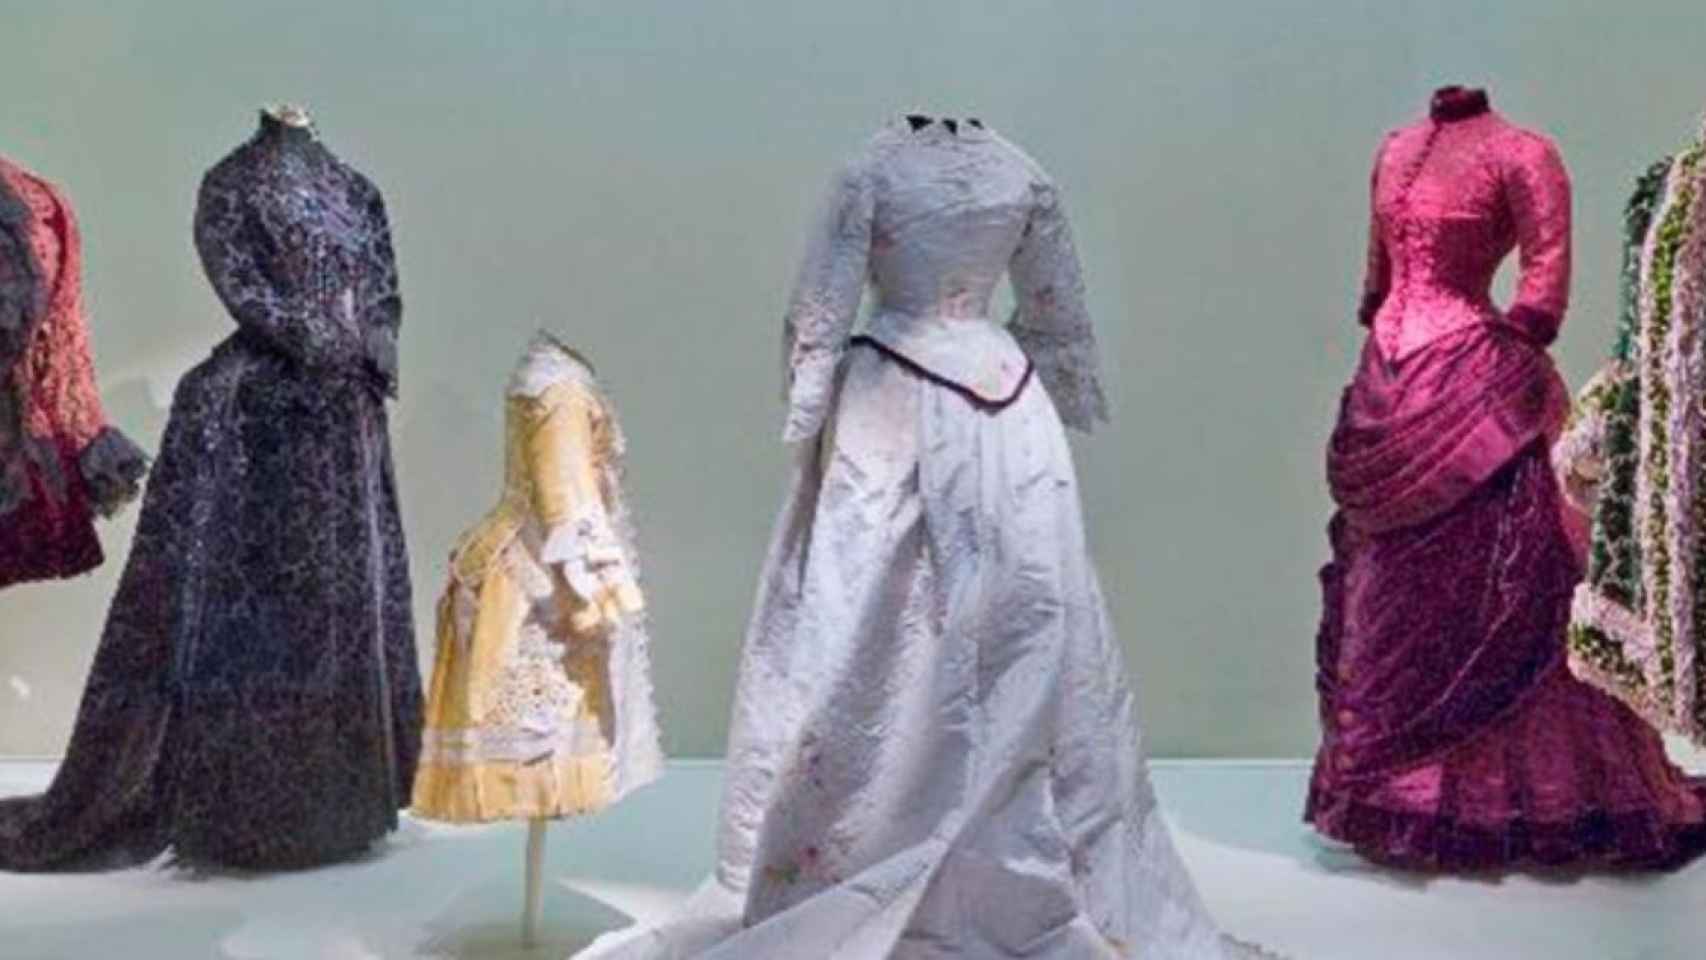 Prendas de uno de los museos de moda, el Museo del Traje / TURISMO MADRID